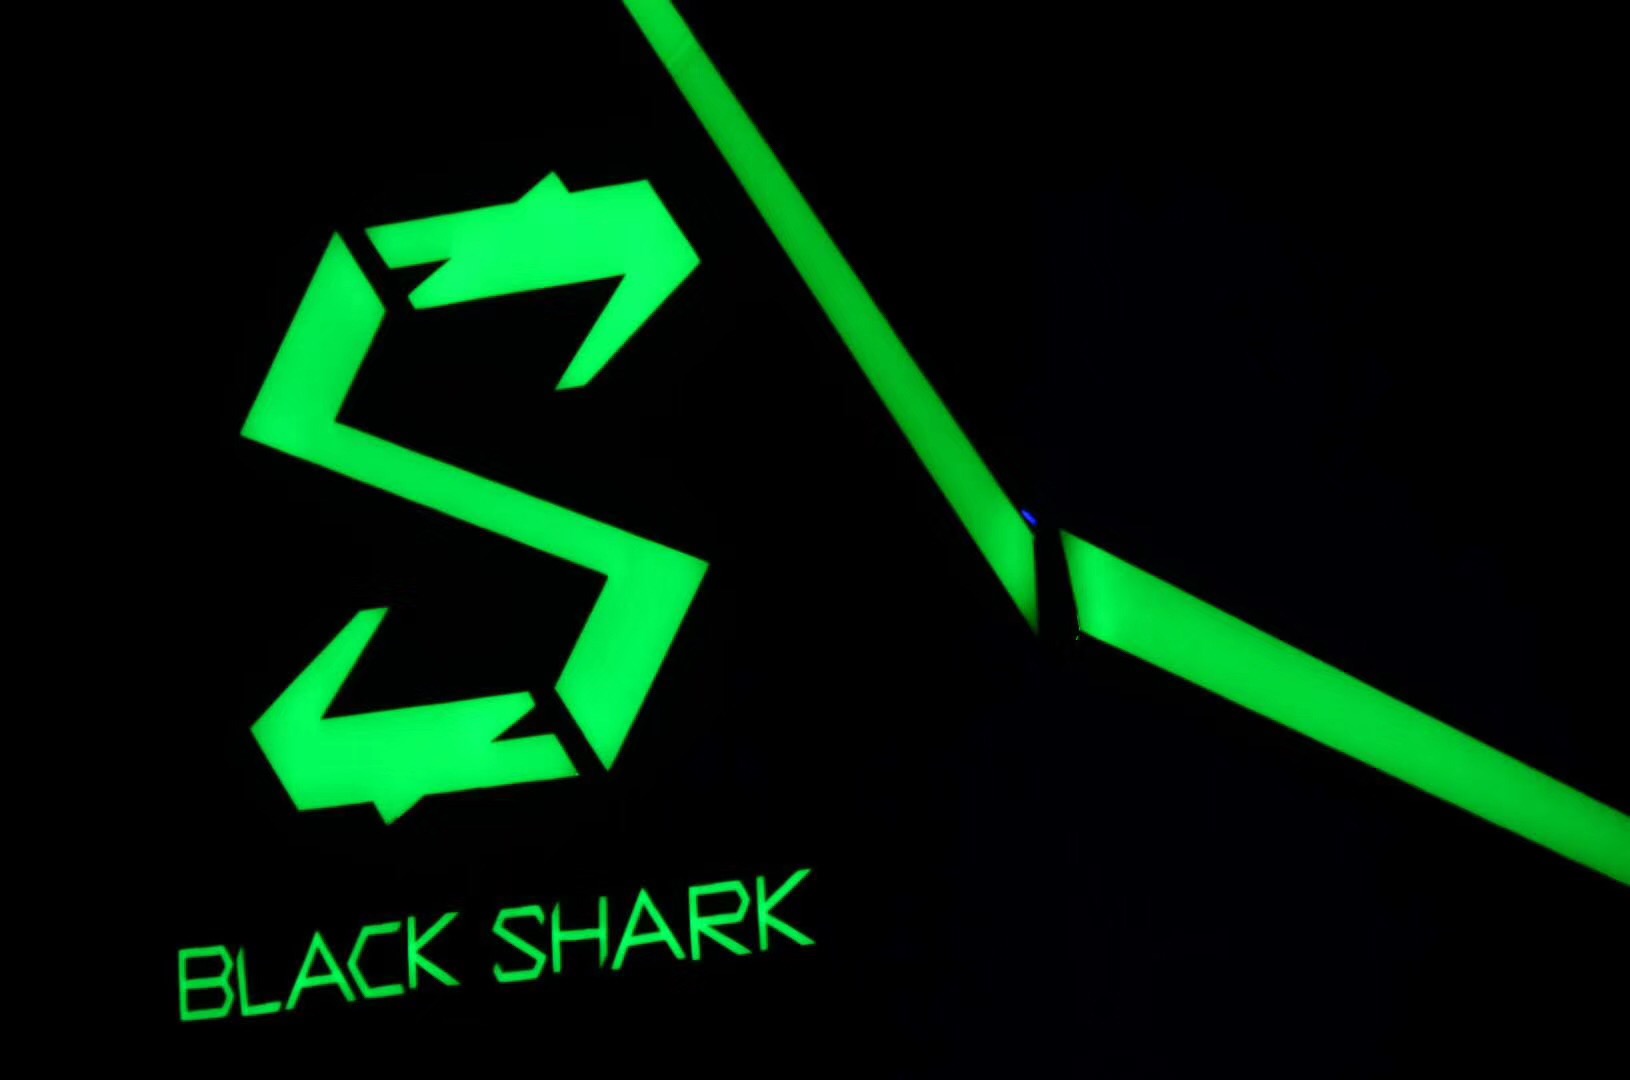 生为竞技,小米生态链公司黑鲨科技游戏手机即将发布.